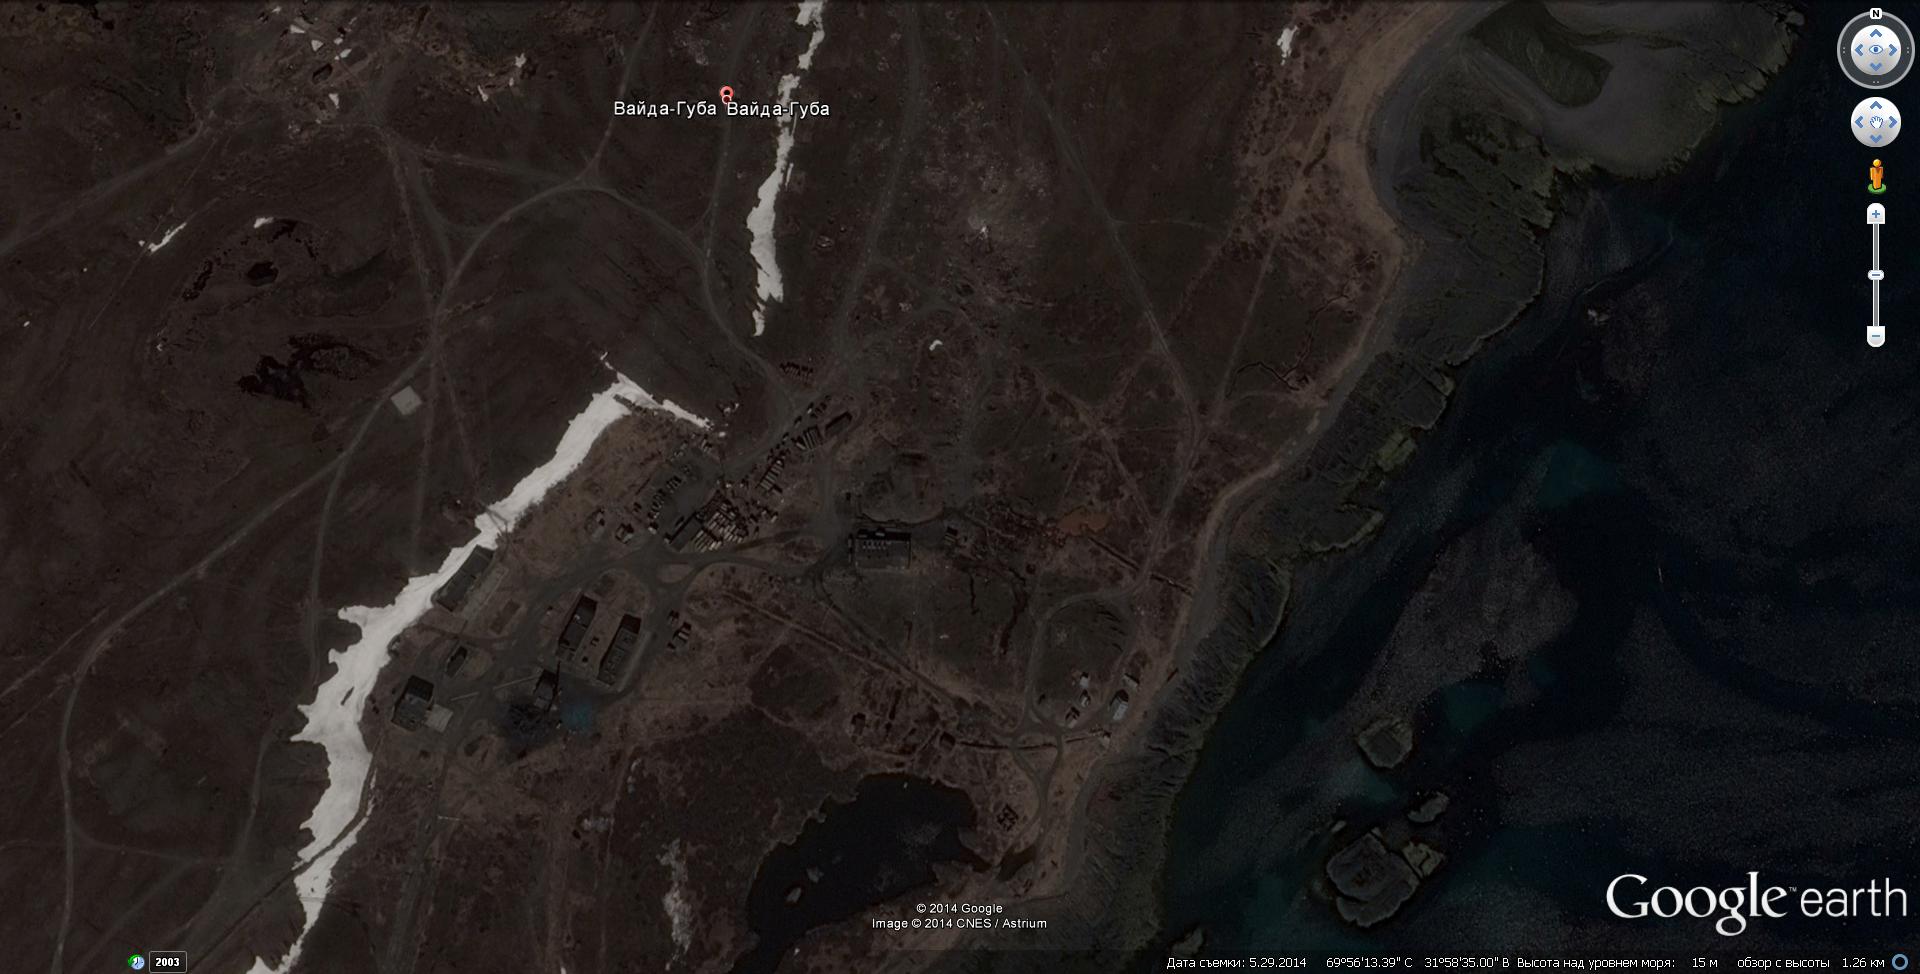 Гугл карта Вайда-Губа нп онлайн в реальном времени: спутник, скачать, проложить маршрут